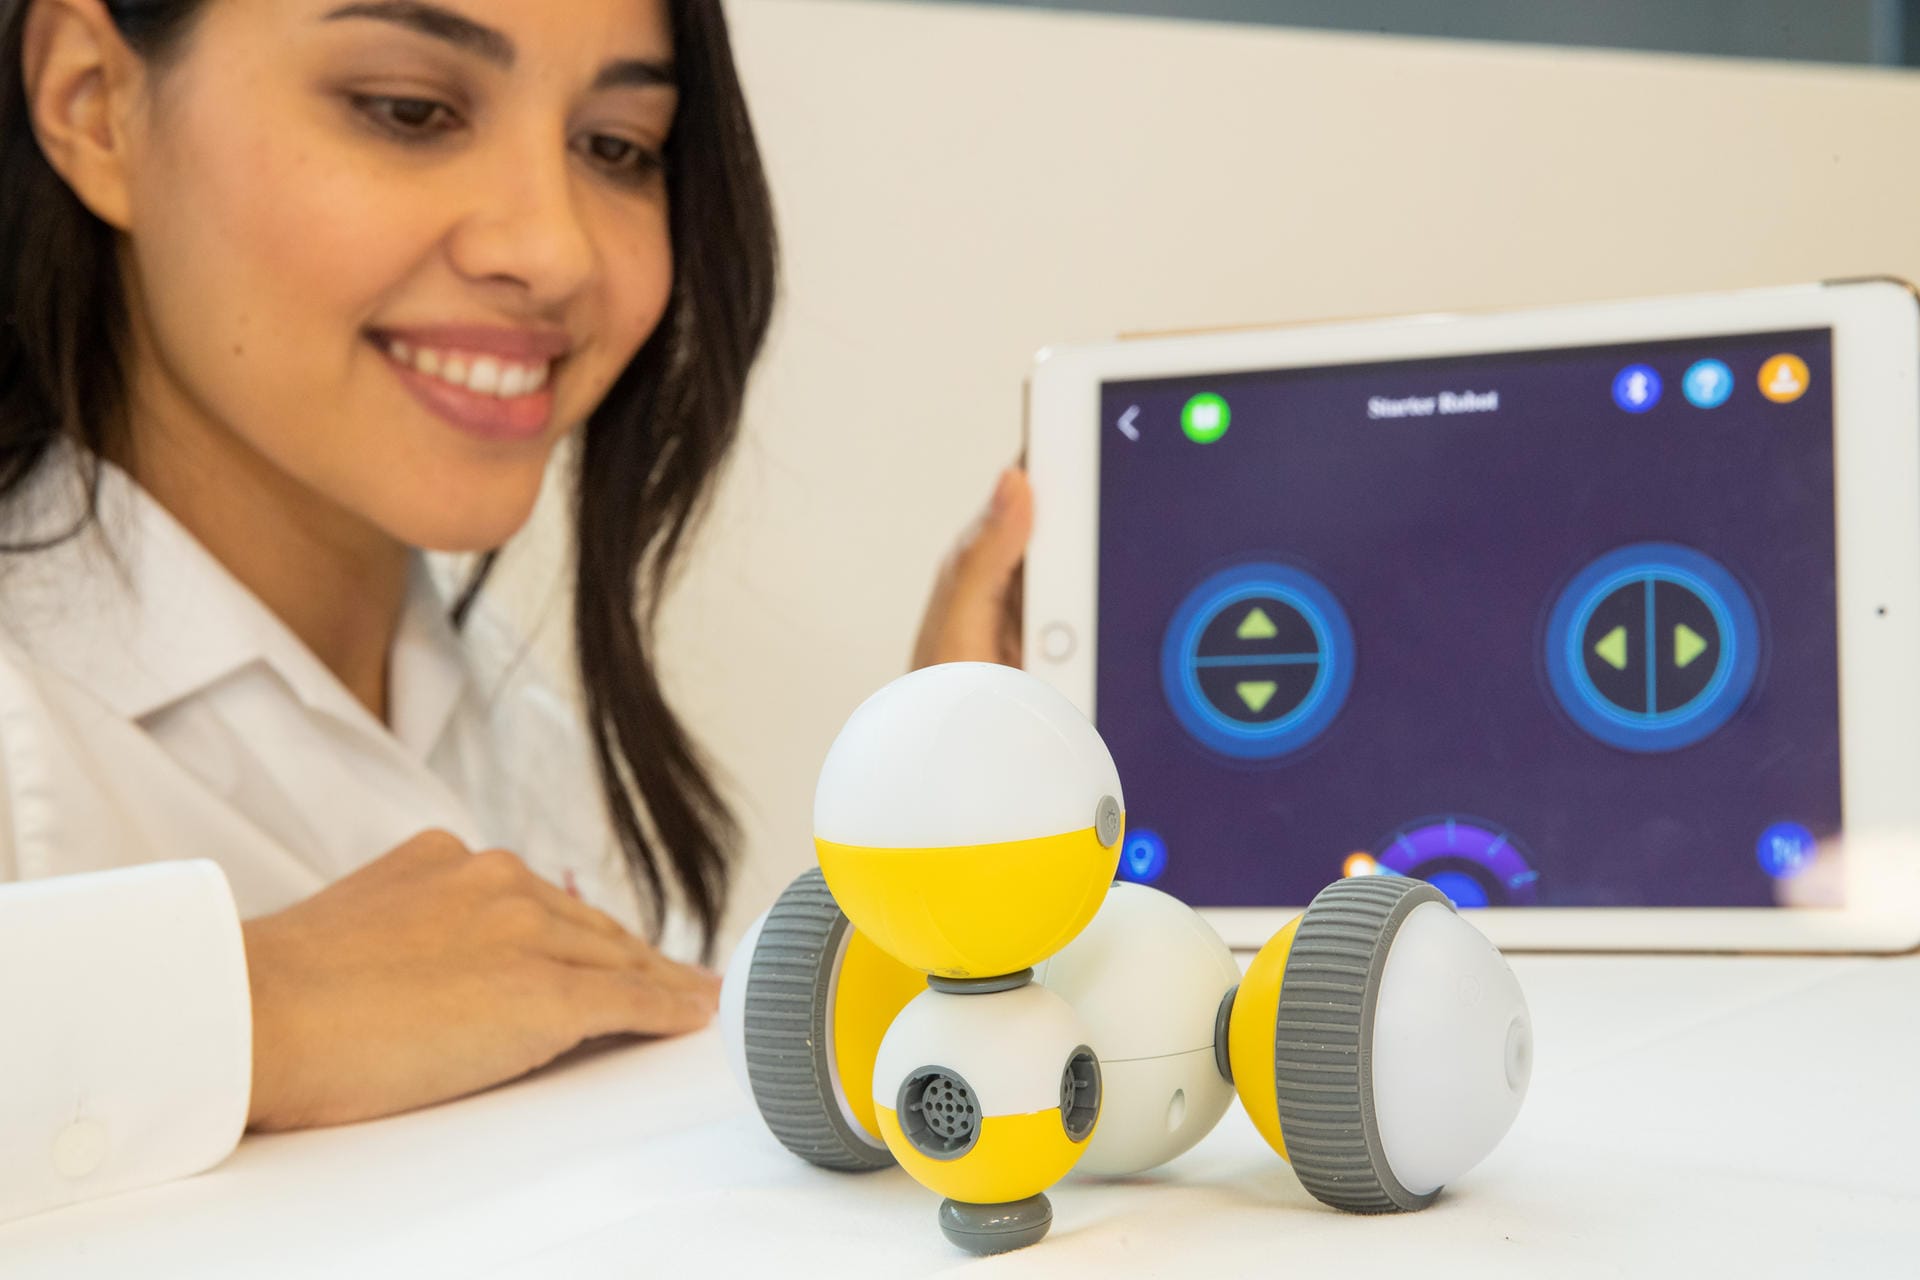 Das Bild zeigt den ferngesteuerten Roboter zum selberbauen "Mabot". Das Gerät ist als Spielzeug gedacht.